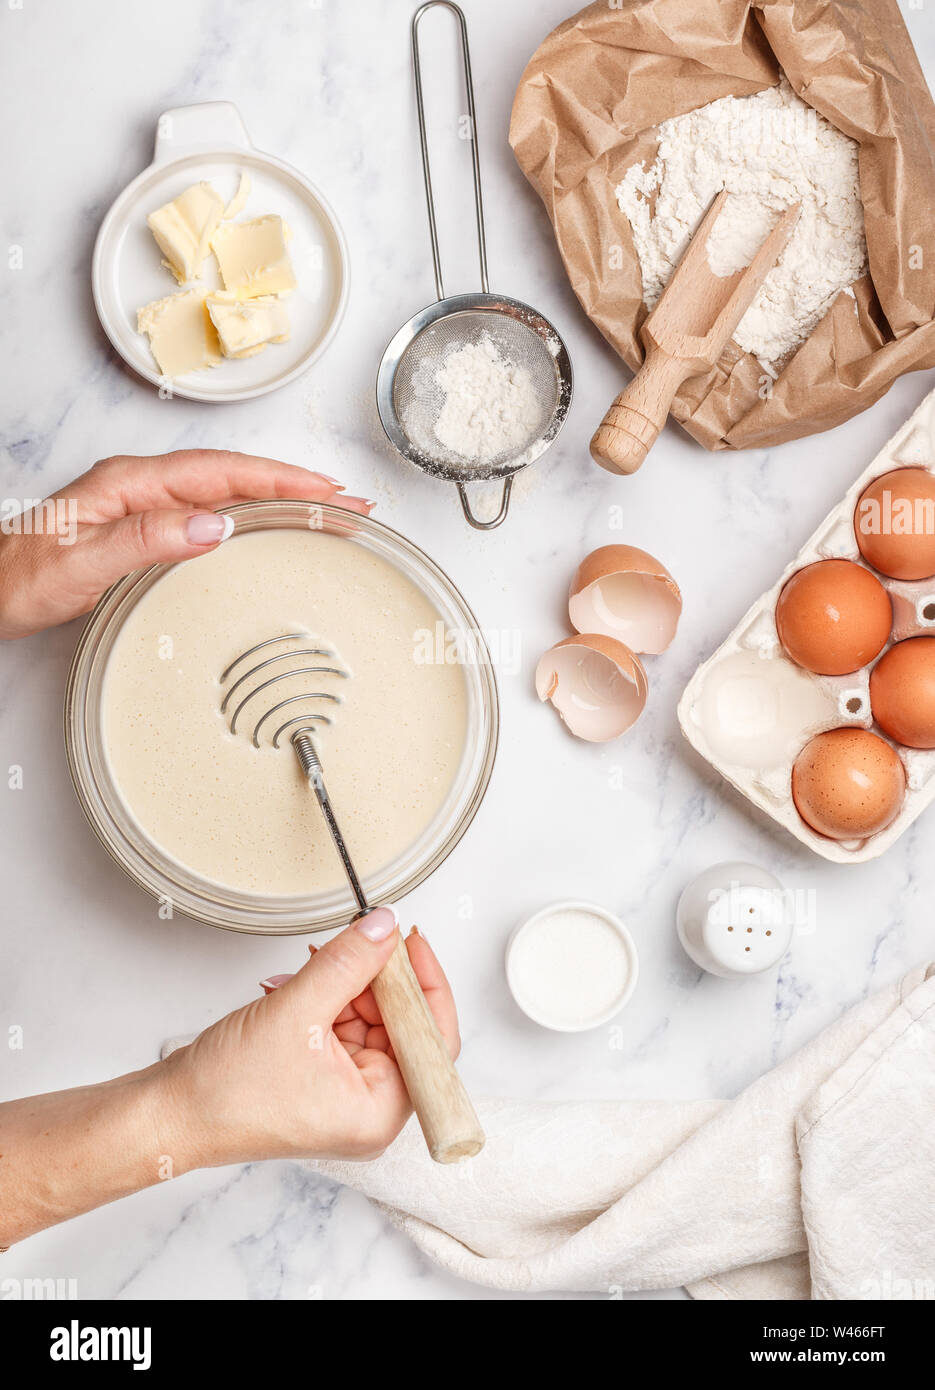 Femme prépare la pâte à crêpes maison pour le petit-déjeuner. Mélanger au fouet pour fouetter dans les mains. Ingrédients sur la table - farine de blé, œufs, beurre, sucre, sa Banque D'Images